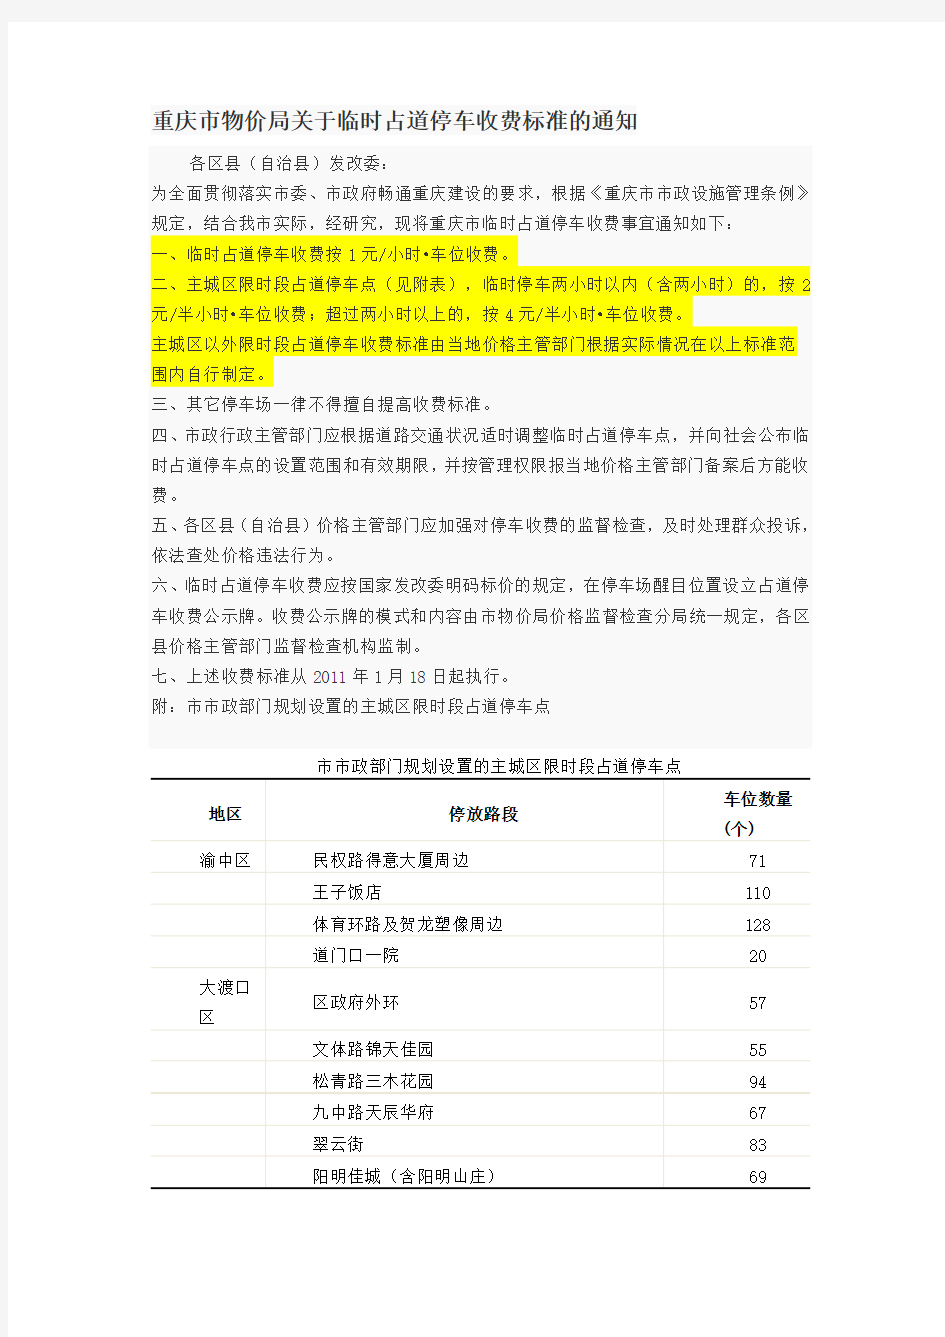 重庆市物价局关于临时占道停车收费标准的通知